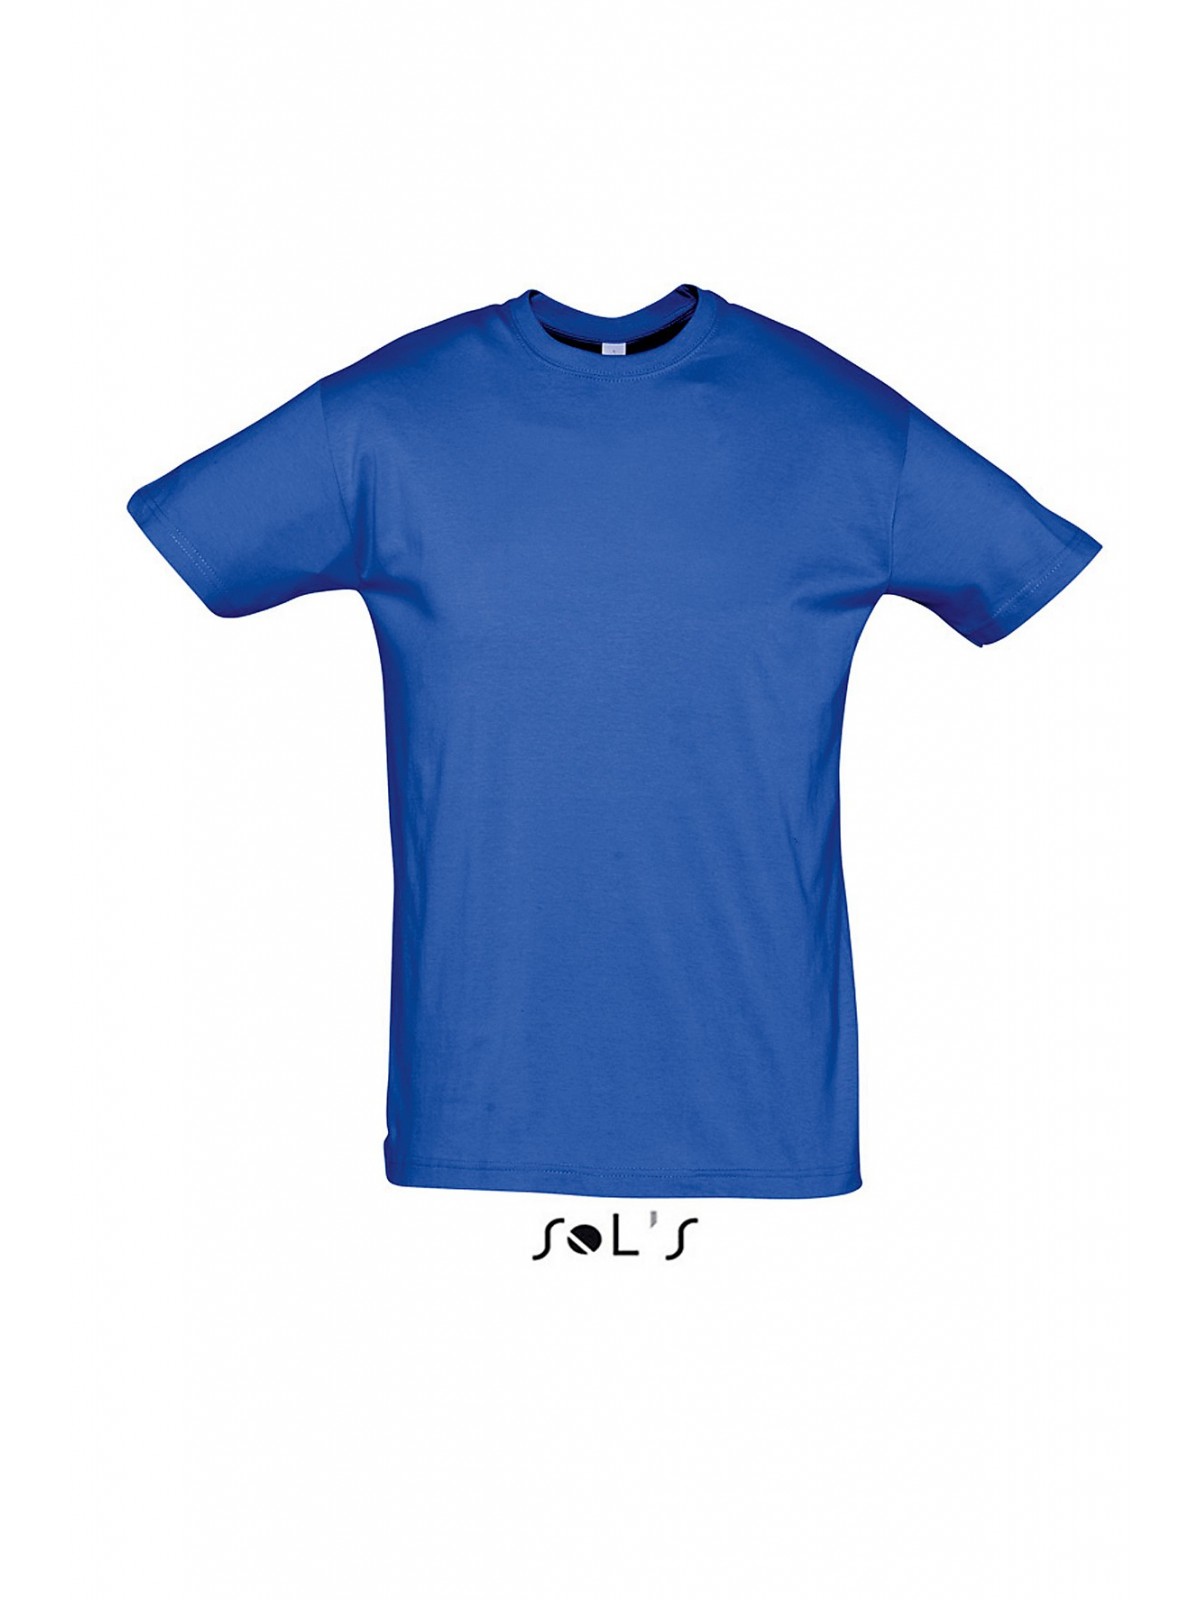 26-040 T-shirt Publicitaire Regent unisexe personnalisé